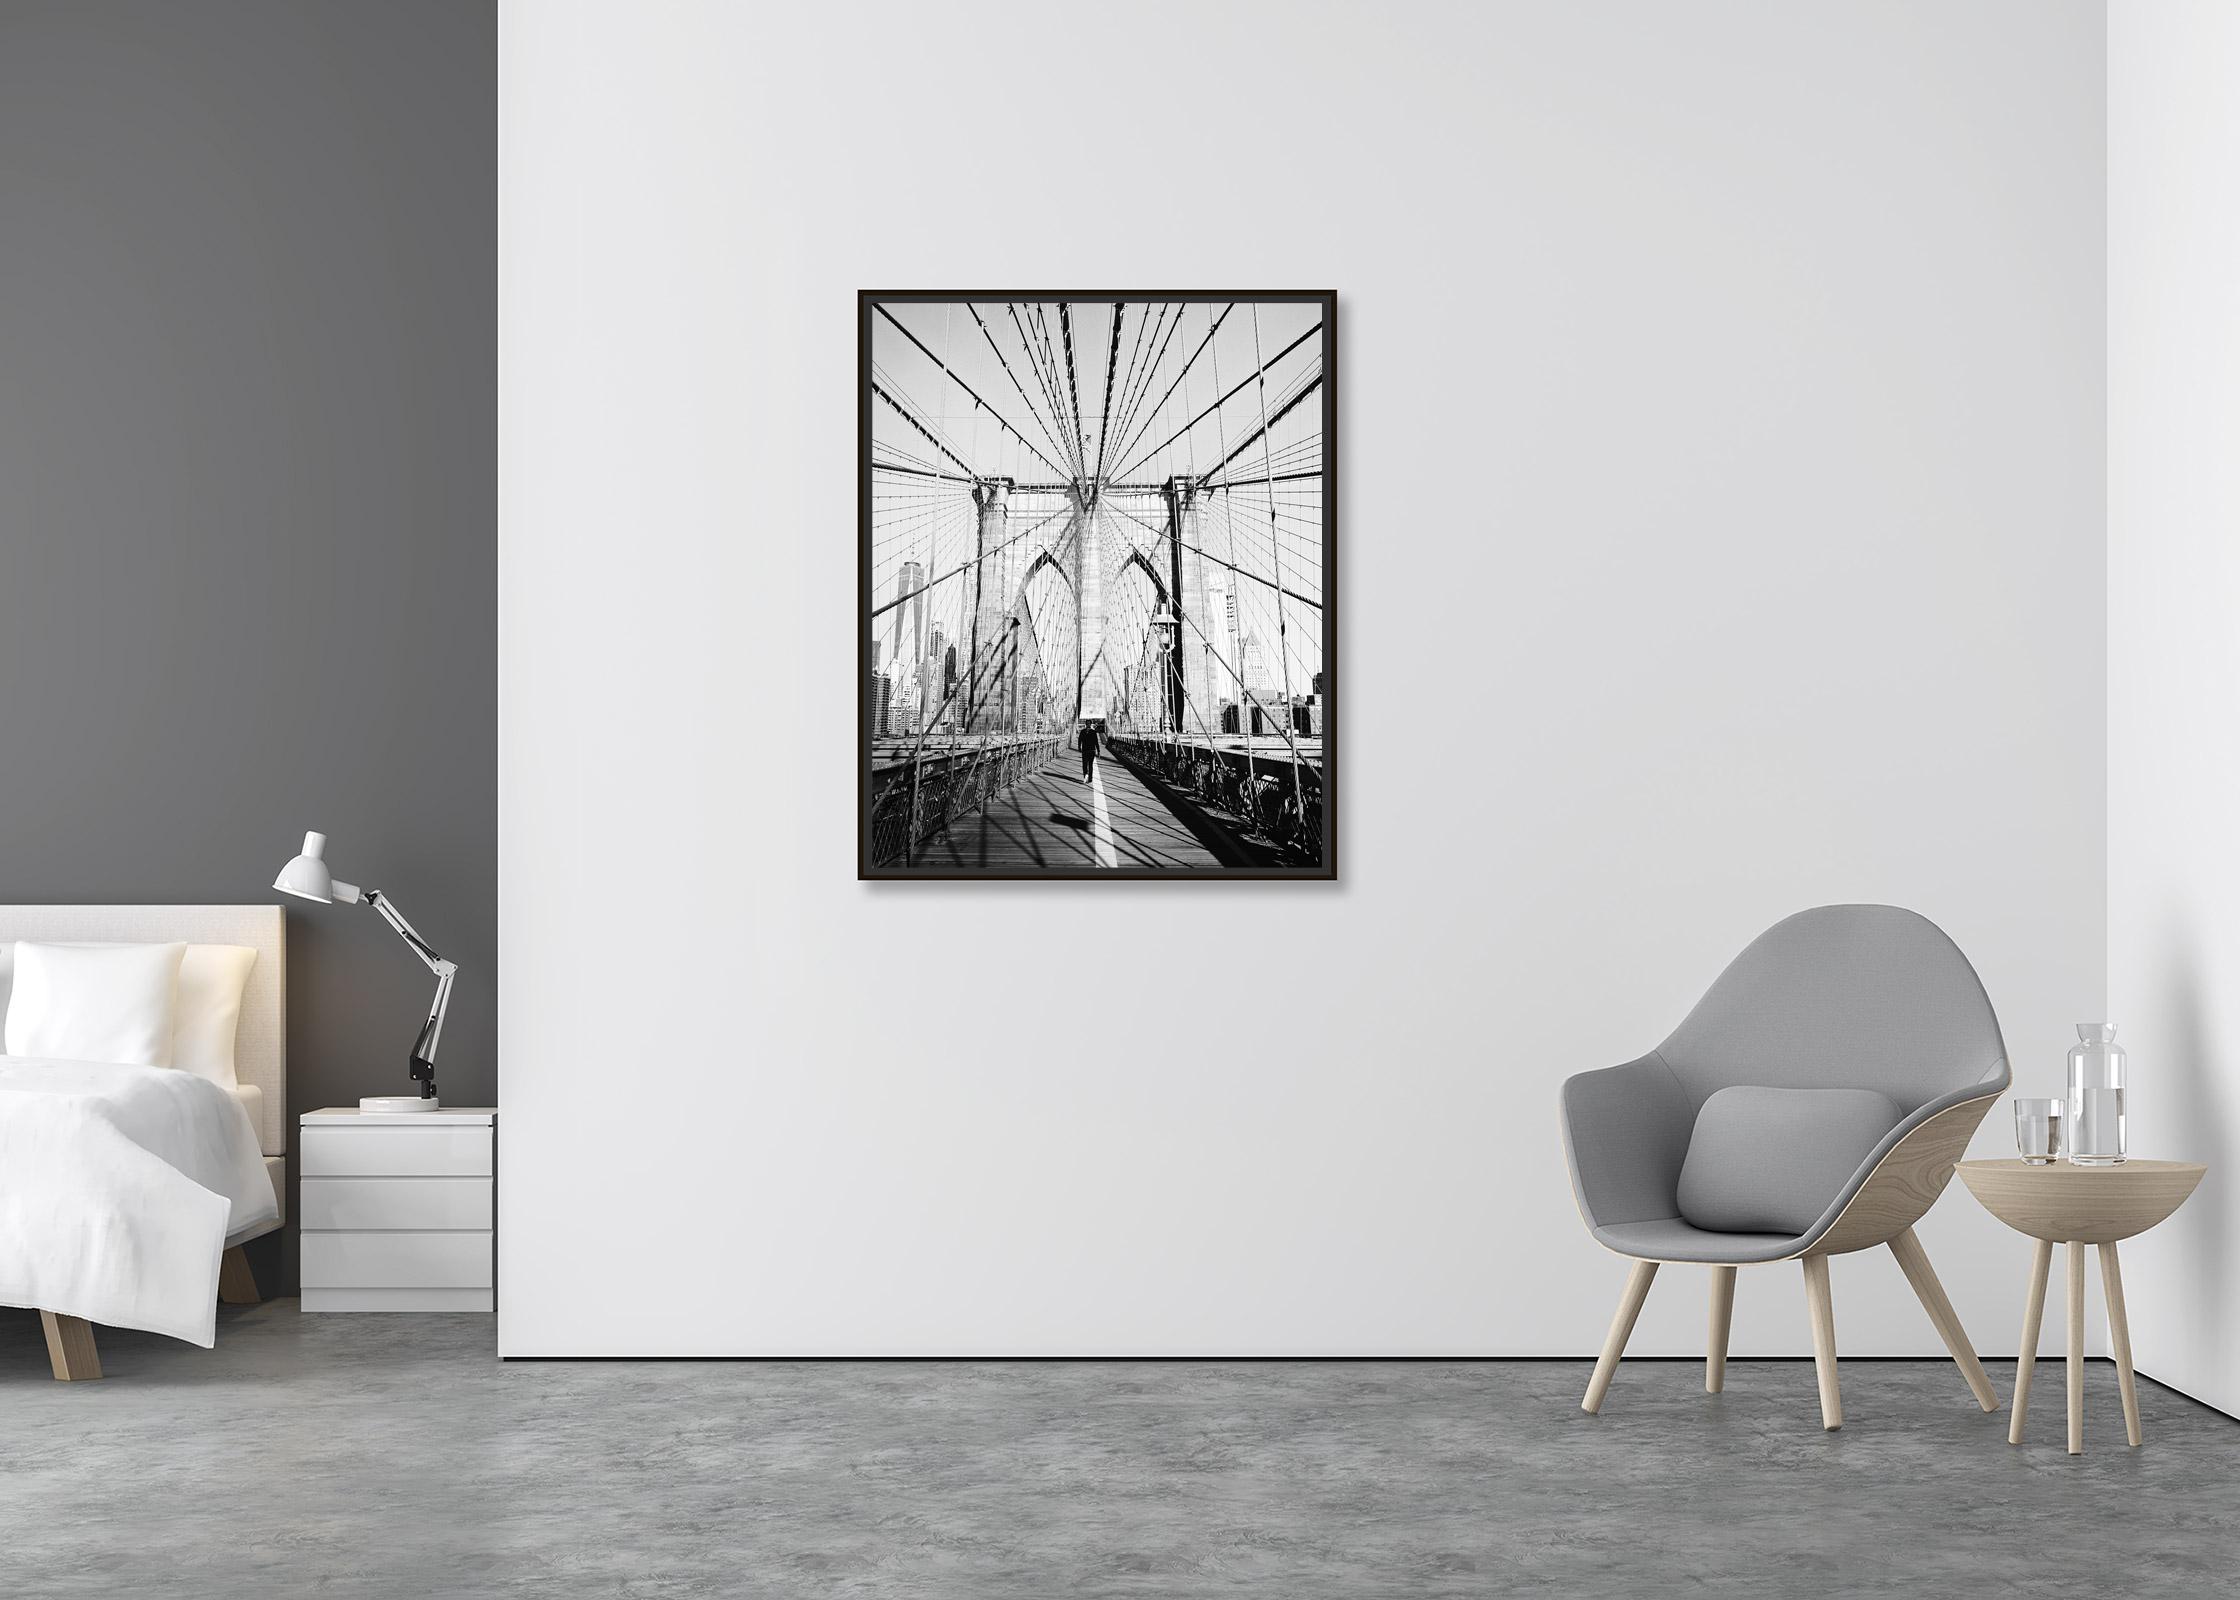 Brooklyn Bridge, New York City, USA, Schwarz-Weiß-Fotografie, Kunststadtlandschaft (Zeitgenössisch), Photograph, von Gerald Berghammer